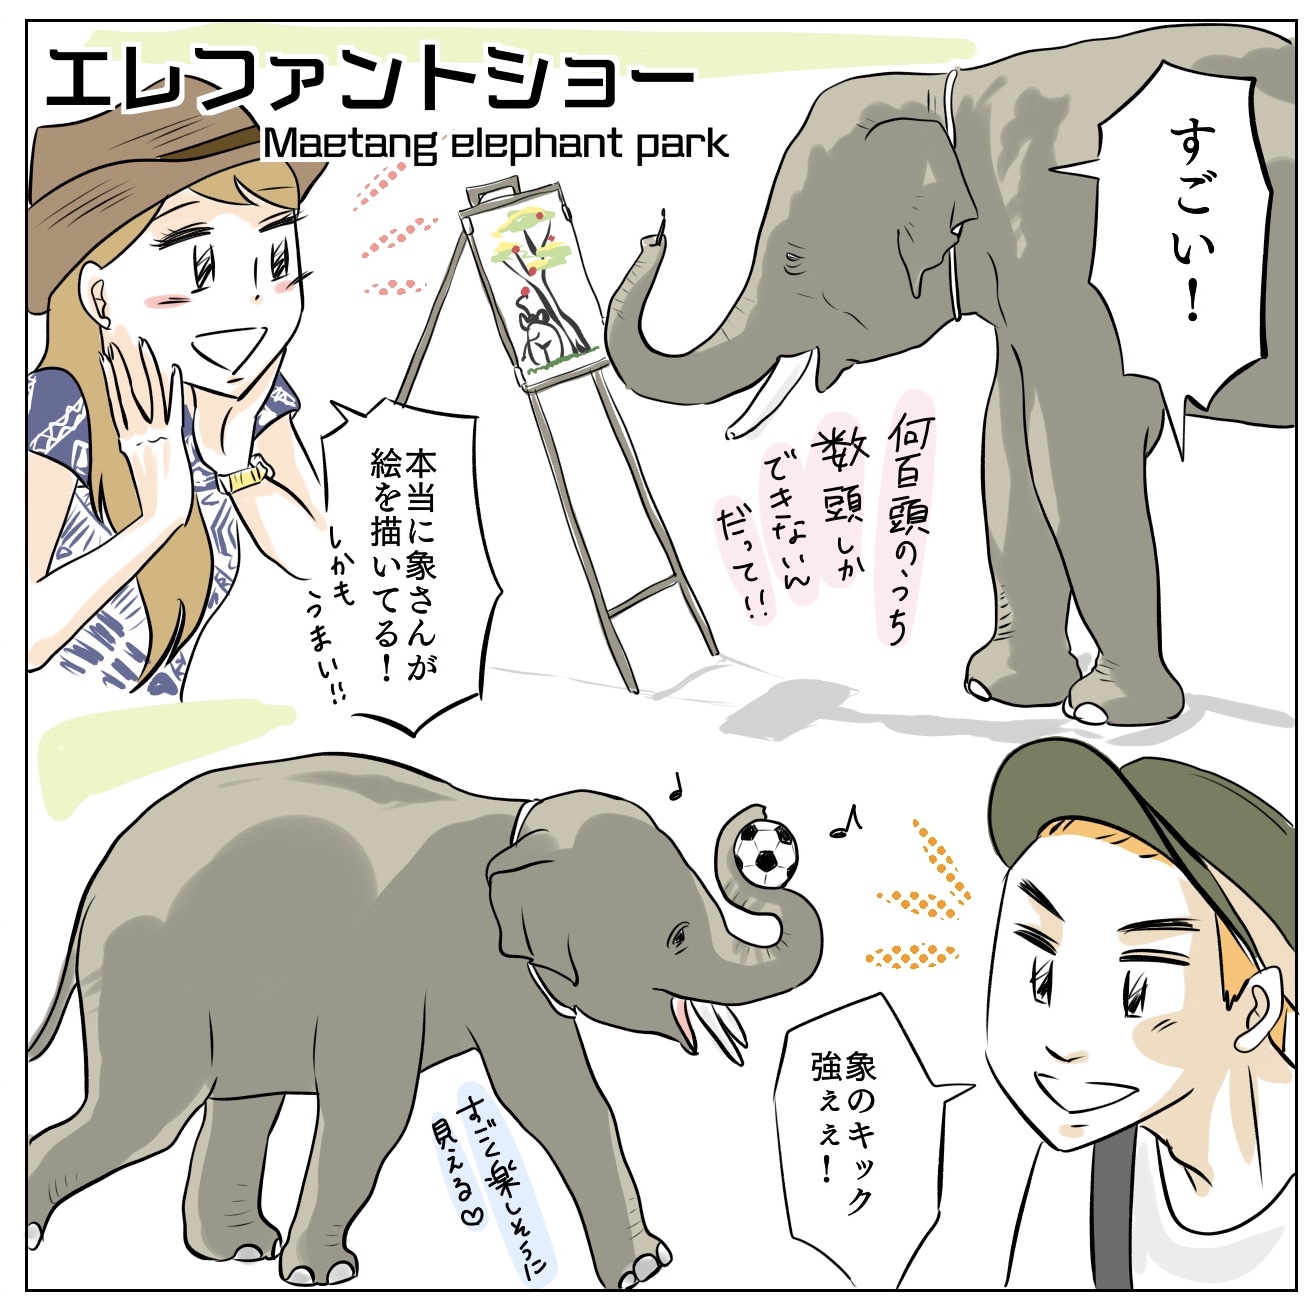 タイ、チェンマイの絵を描く象に会いに。メーターンエレファントパーク